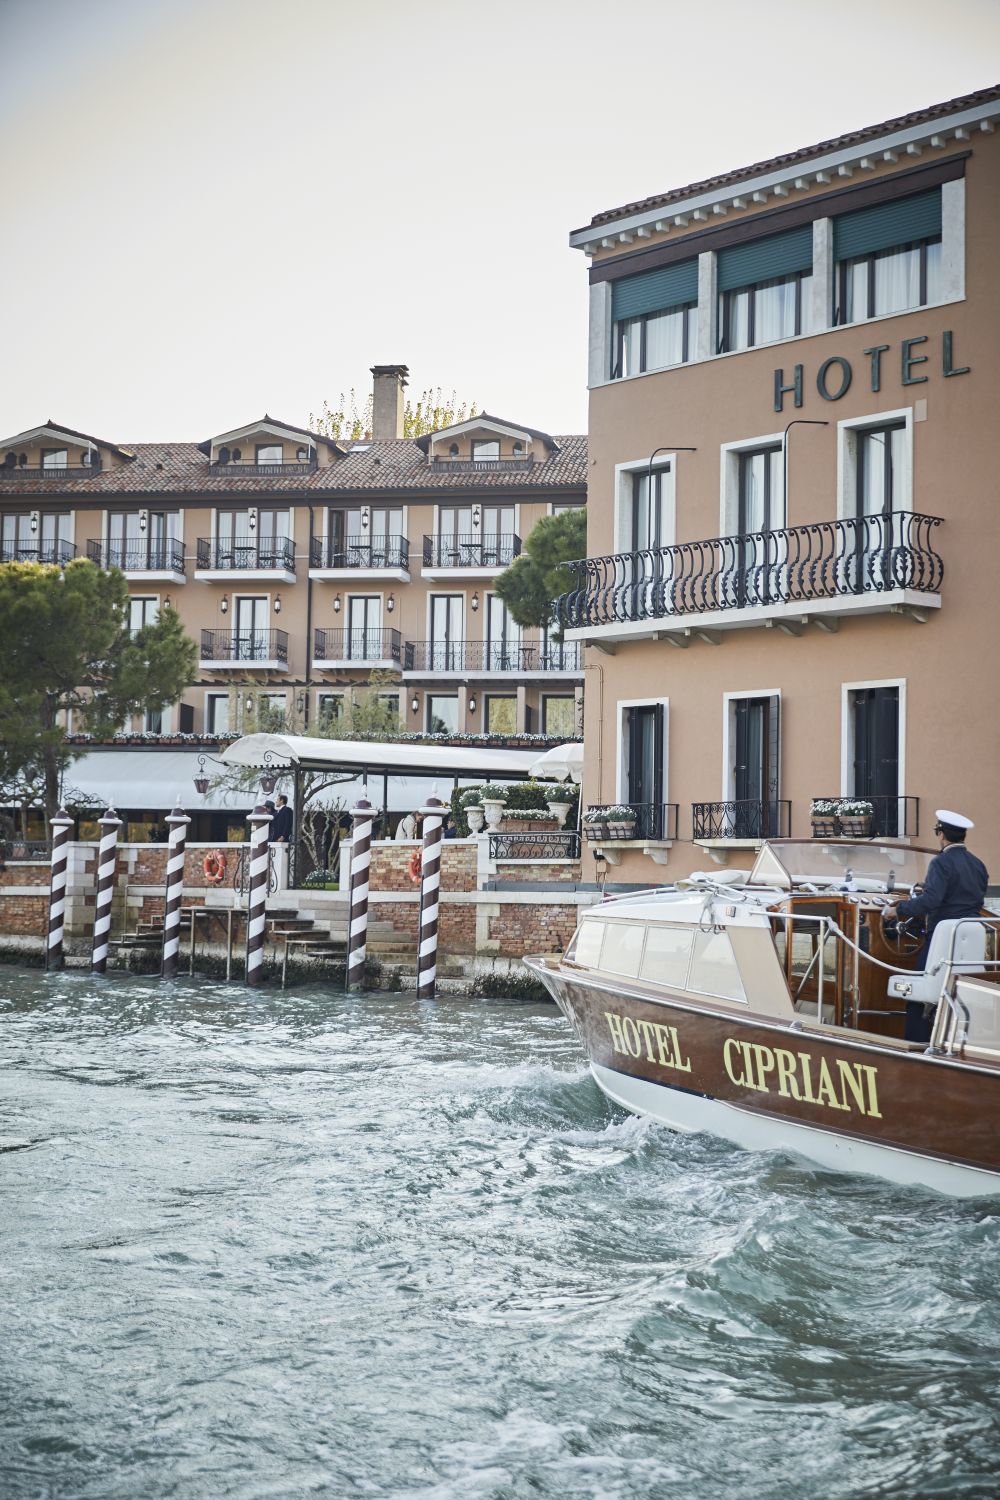 Hotel Cipriani en Venecia